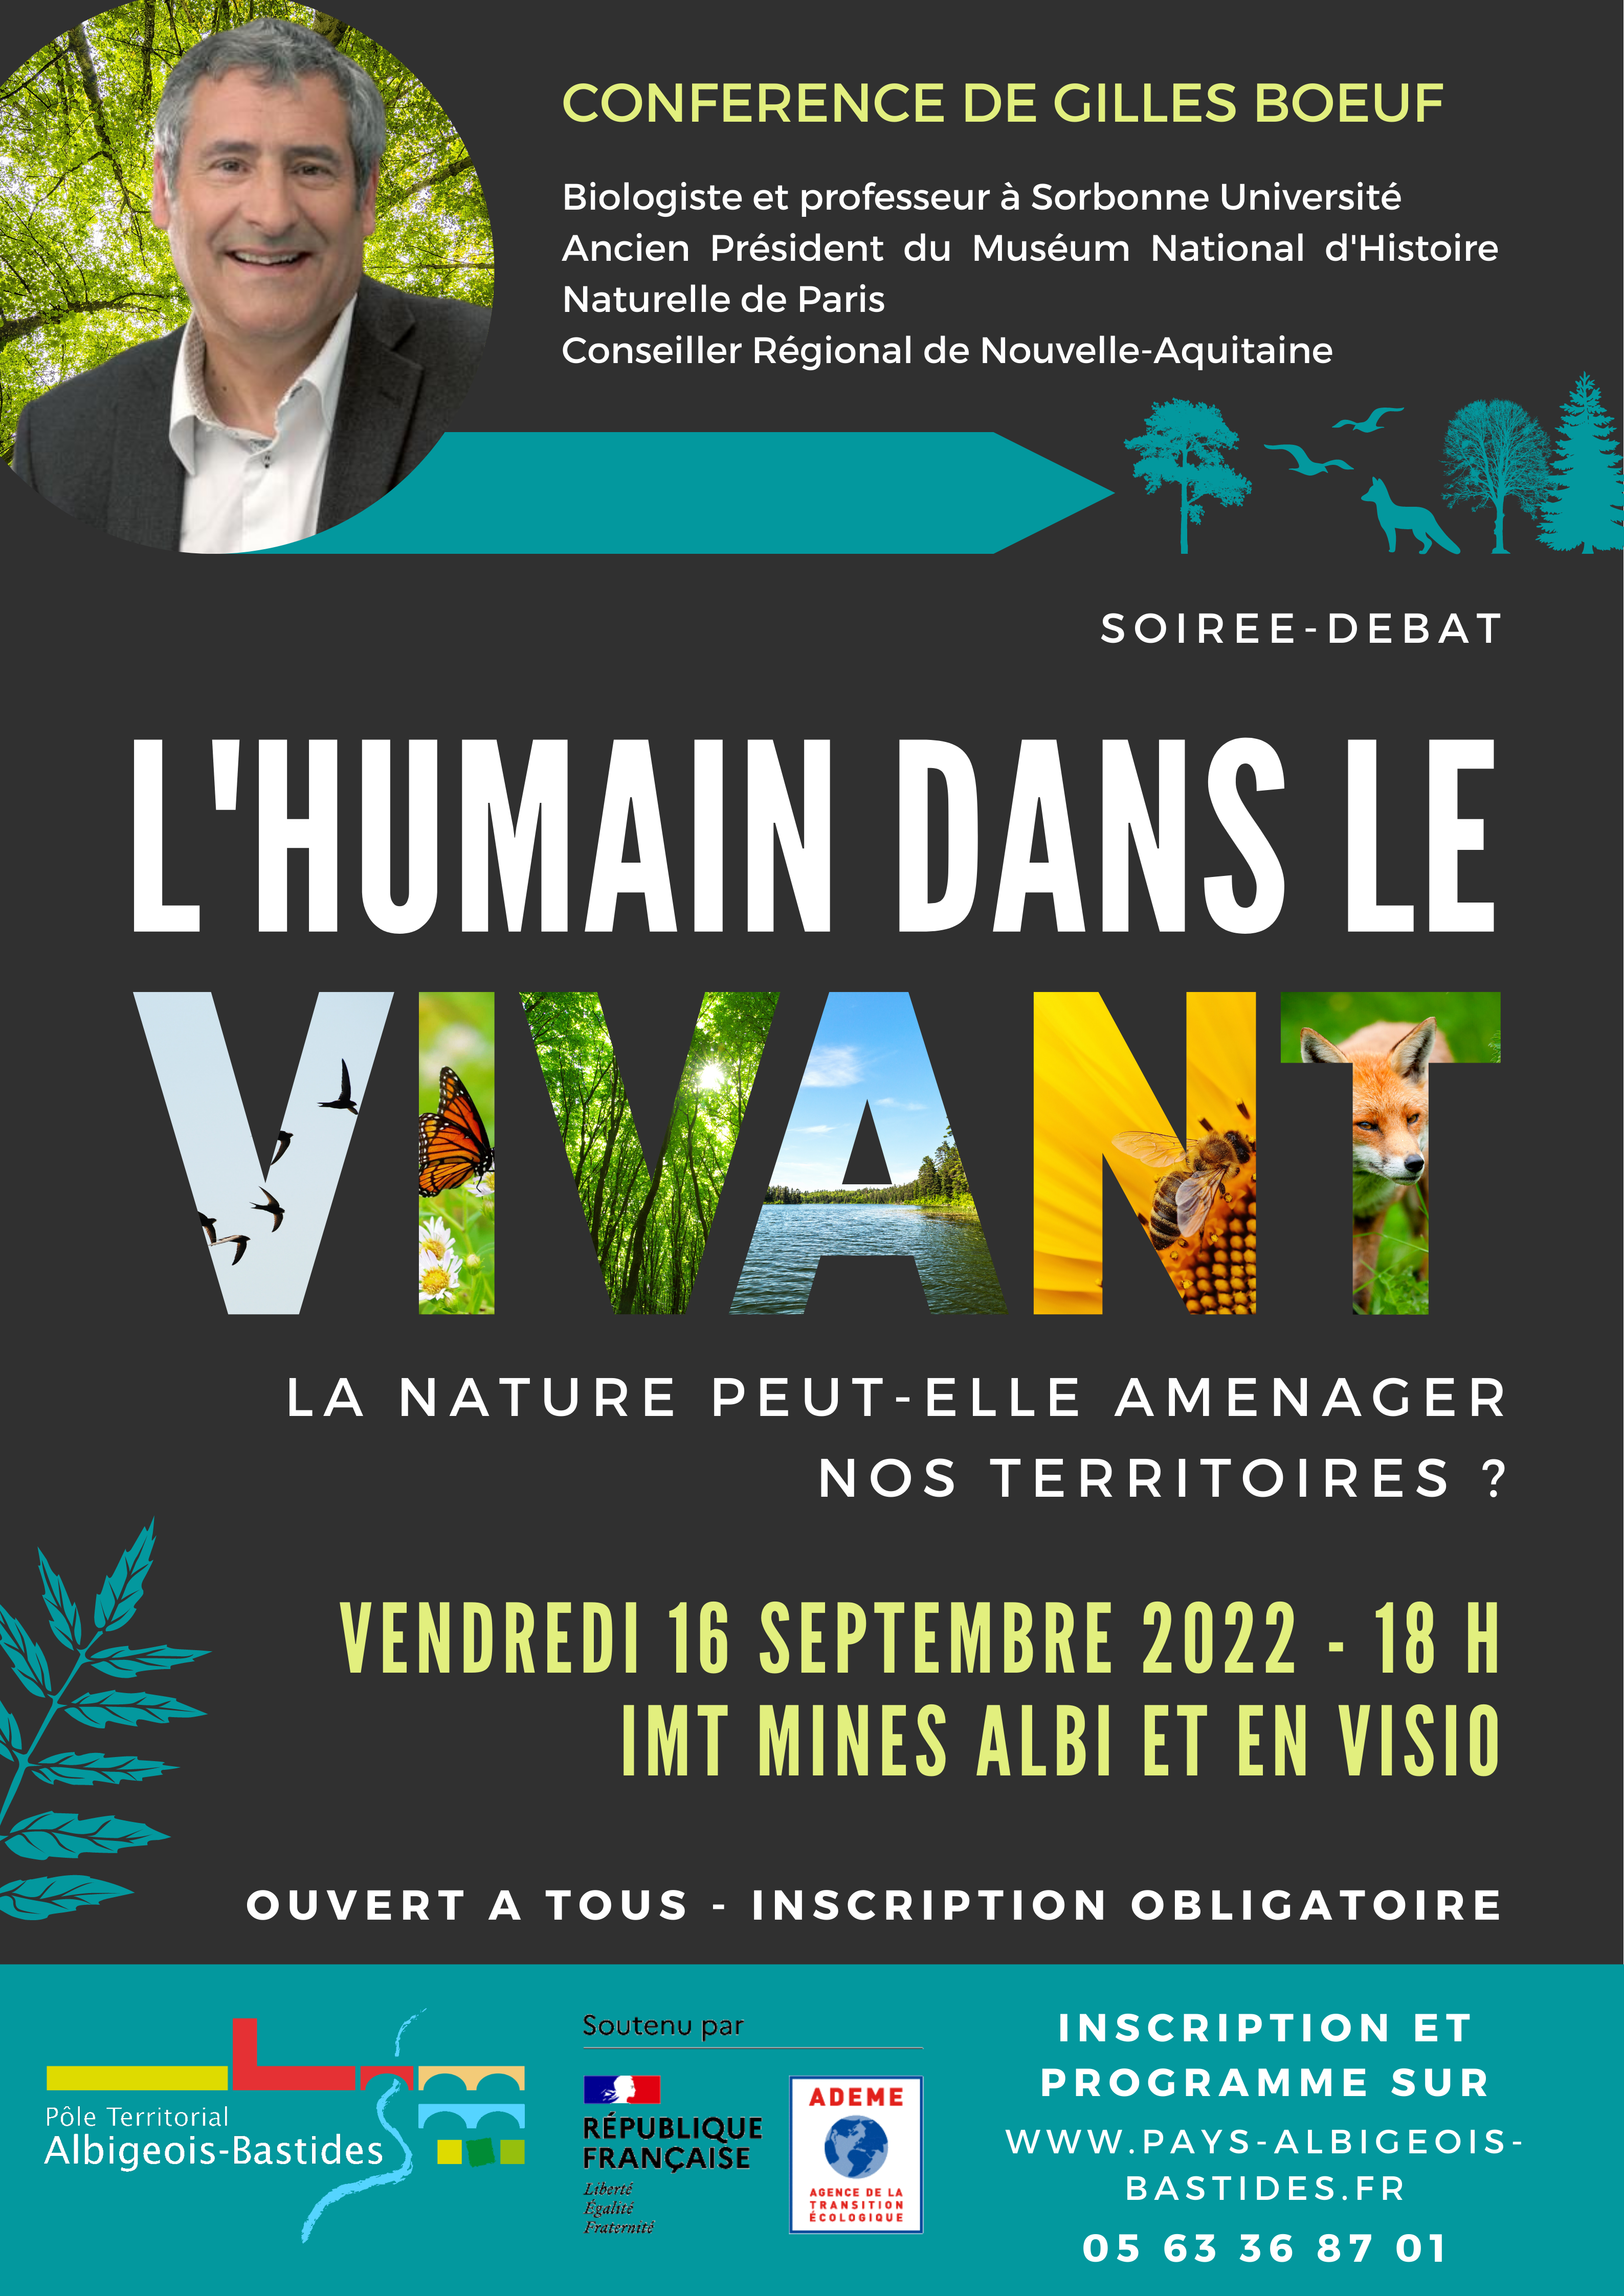 Conférence : "L'humain dans le vivant" avec Gilles Boeuf